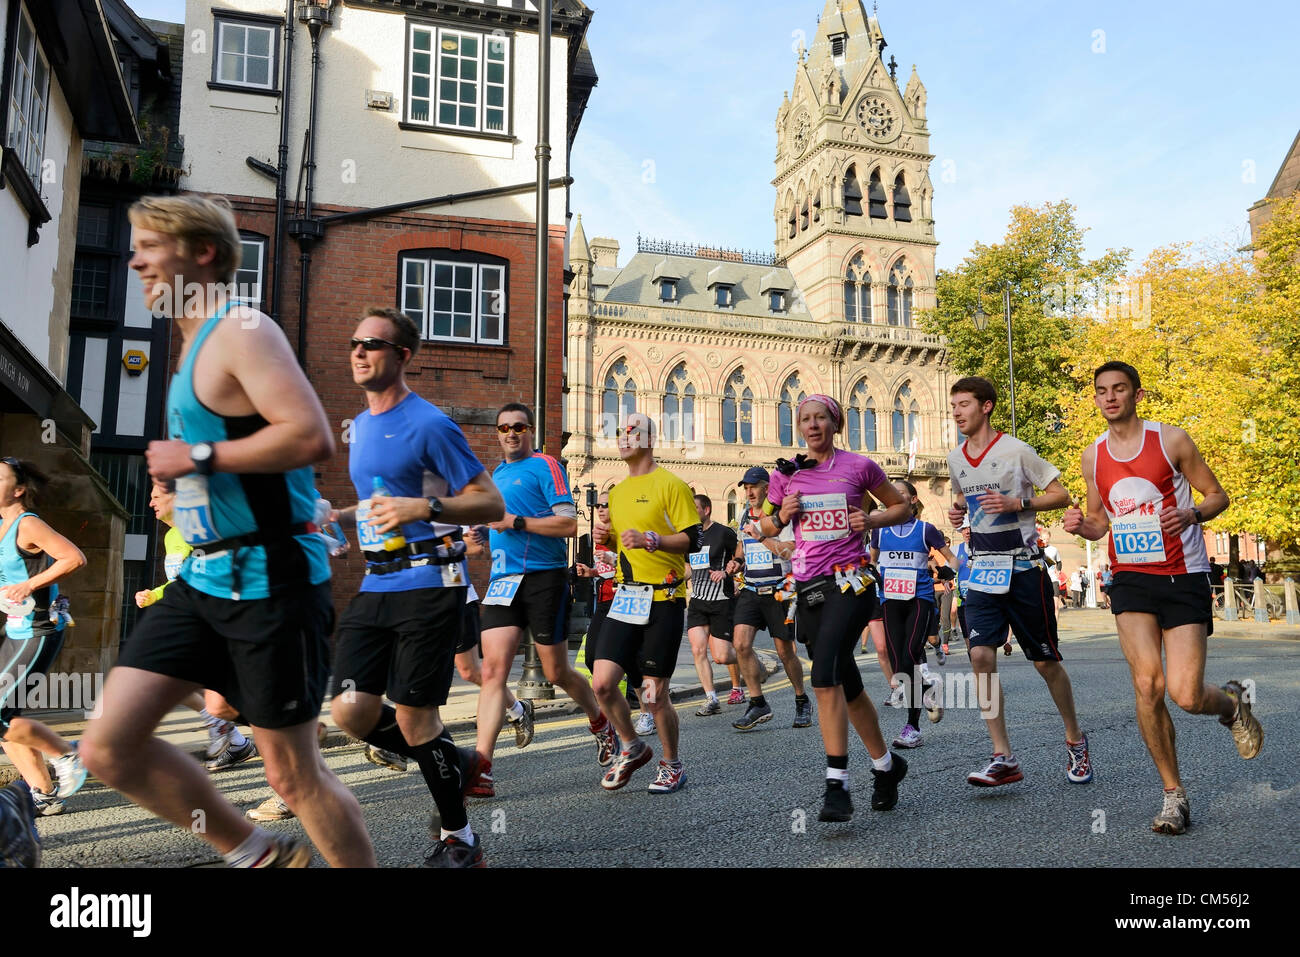 7 octobre 2012, Chester UK. Peu après le début de la MBNA Chester Marathon, les coureurs passent devant l'hôtel de ville et le long de St Werburgh Street. Banque D'Images